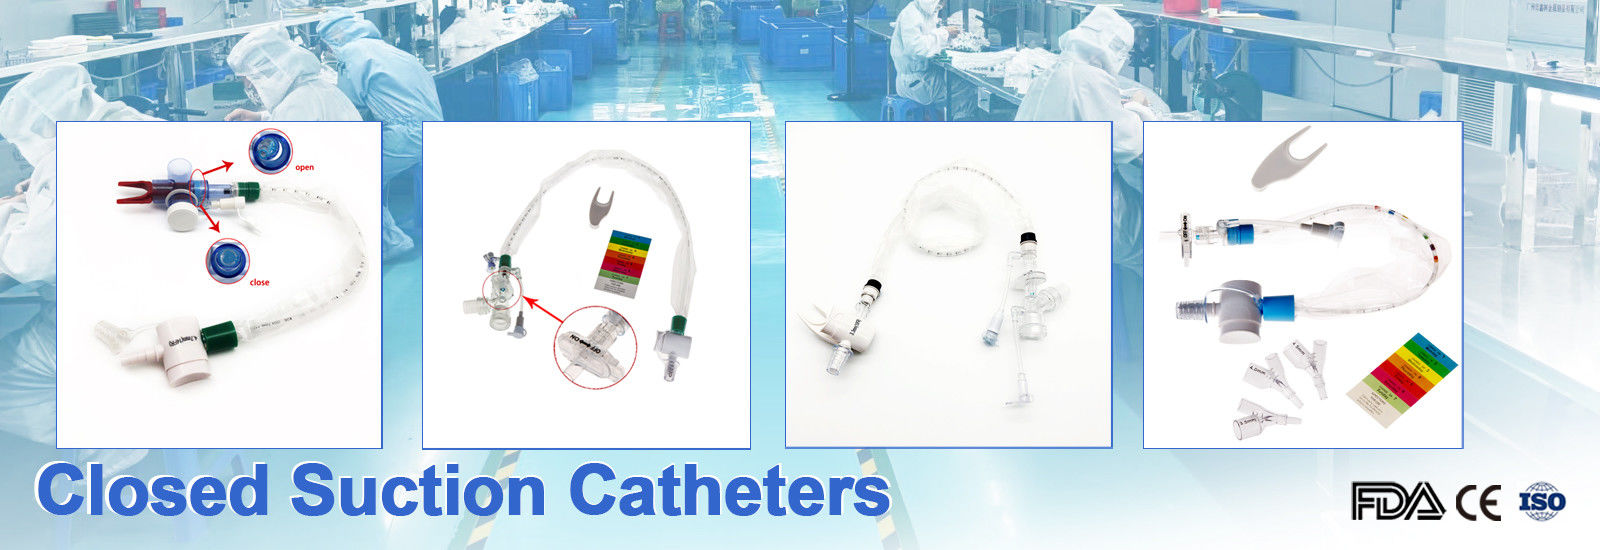 kwaliteit De Catheter van siliconefoley fabriek